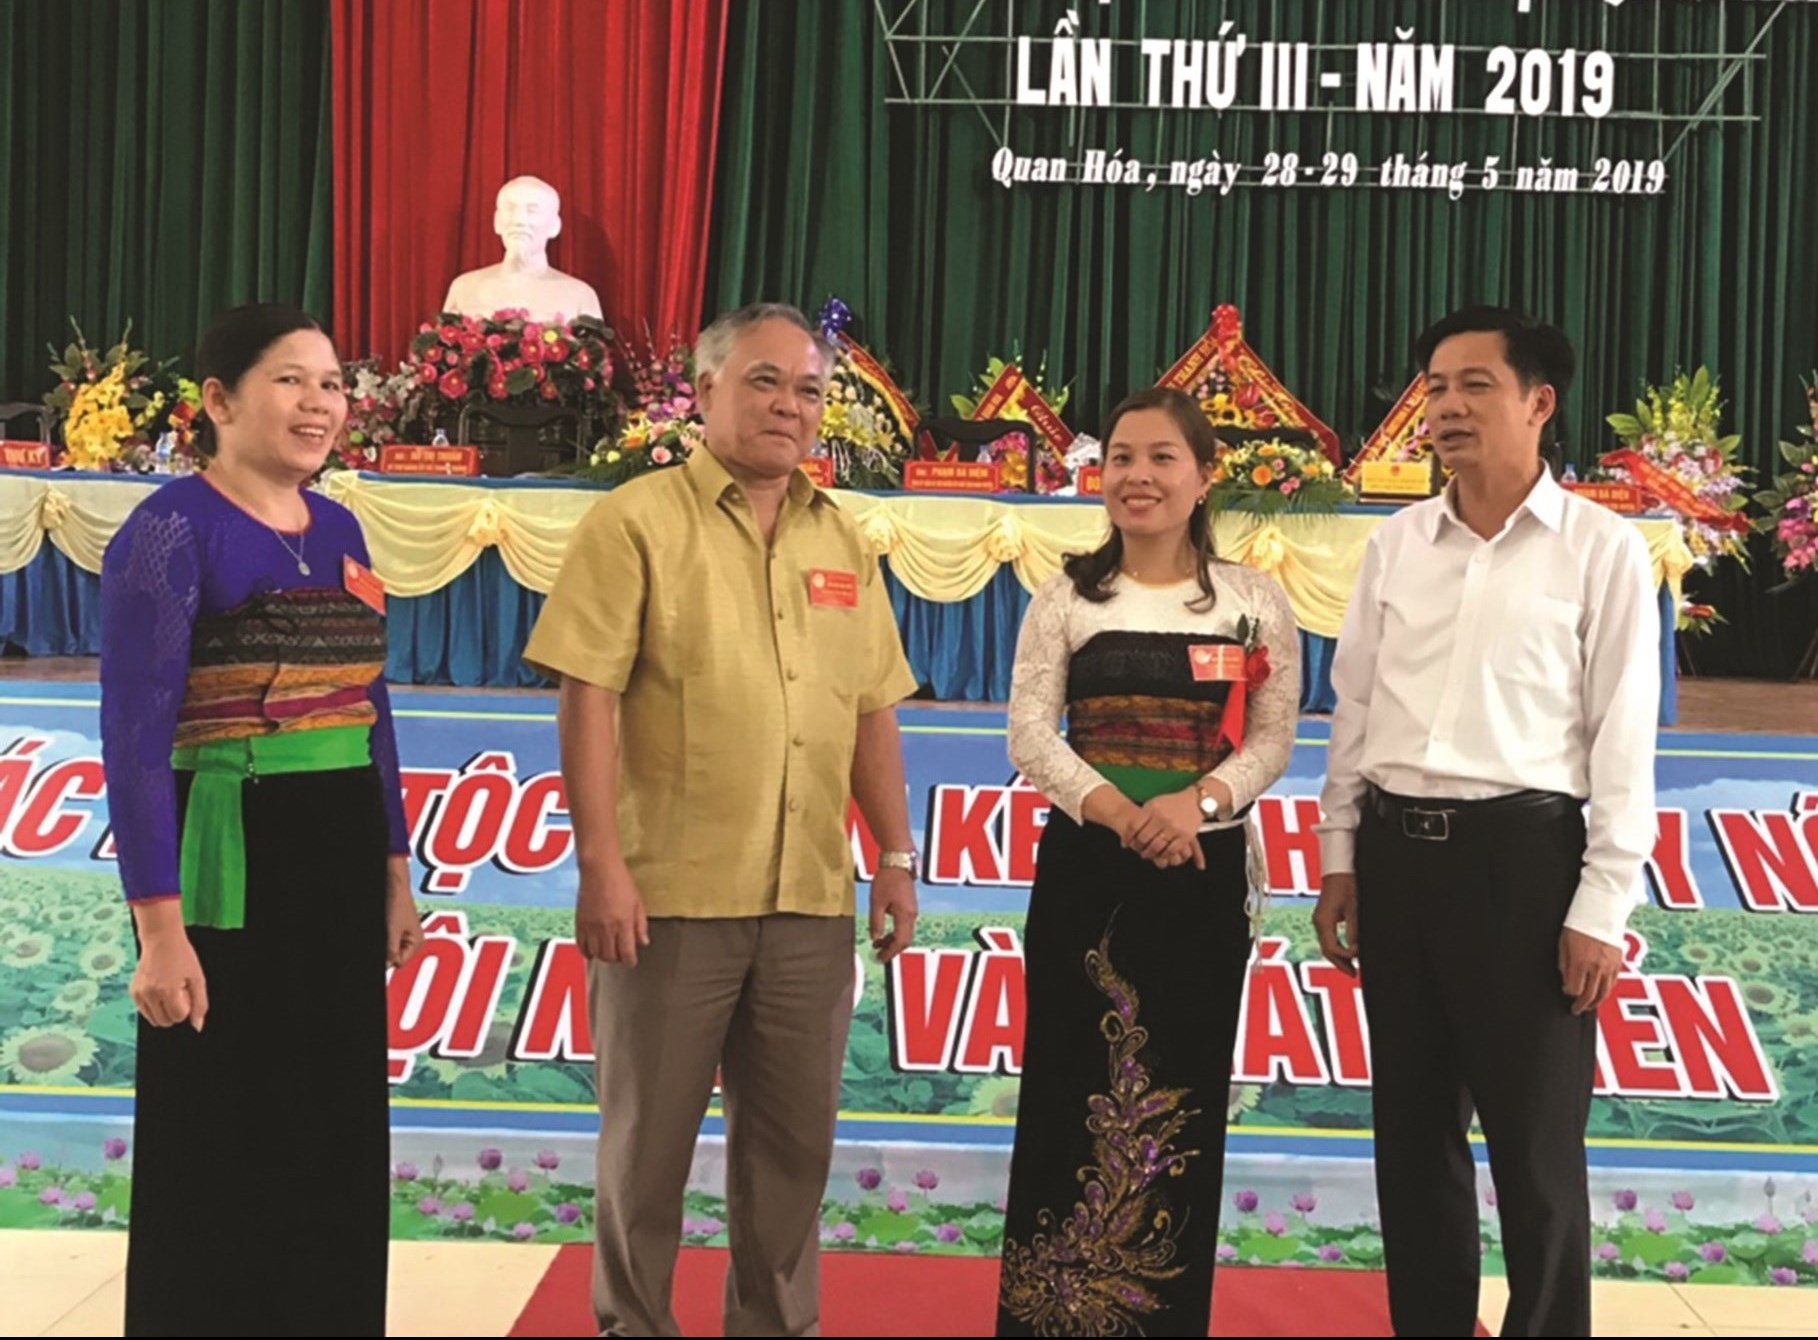 Ông Lương Văn Tưởng, Trưởng Ban Dân tộc Thanh Hóa (ngoài cùng bên phải) trao đổi với đại biểu dự Đại hội Đại biểu các DTTS cấp huyện lần thứ III năm 2019.